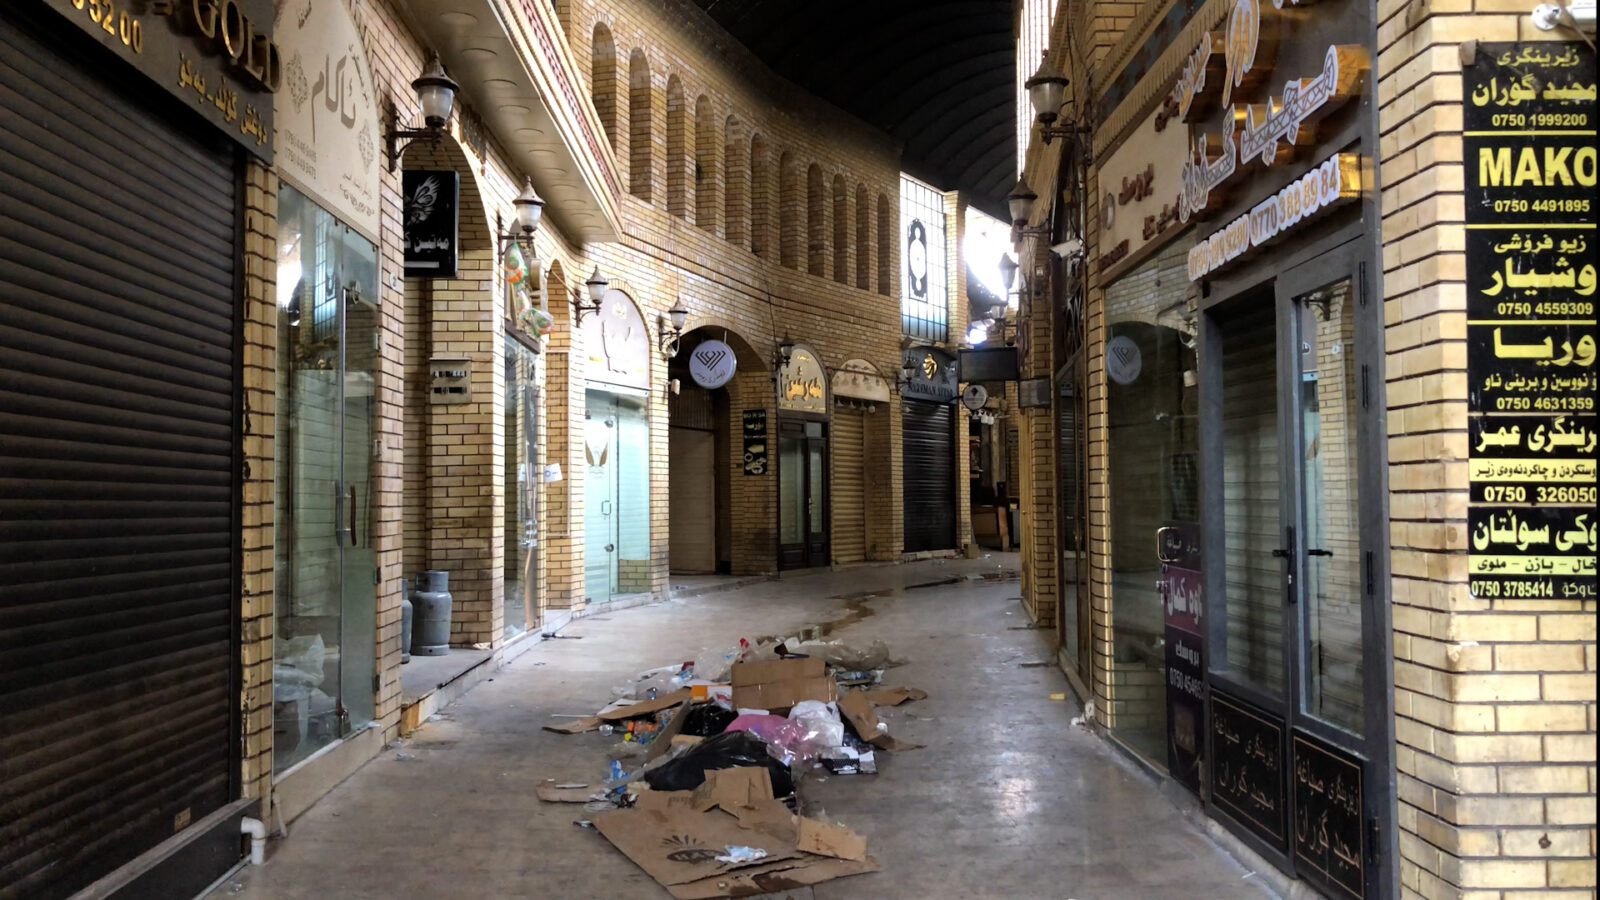 شركة محلية تتبرع بإصلاح المجوهرات المتضررة جراء حريق سوق القيصرية وسط أربيل